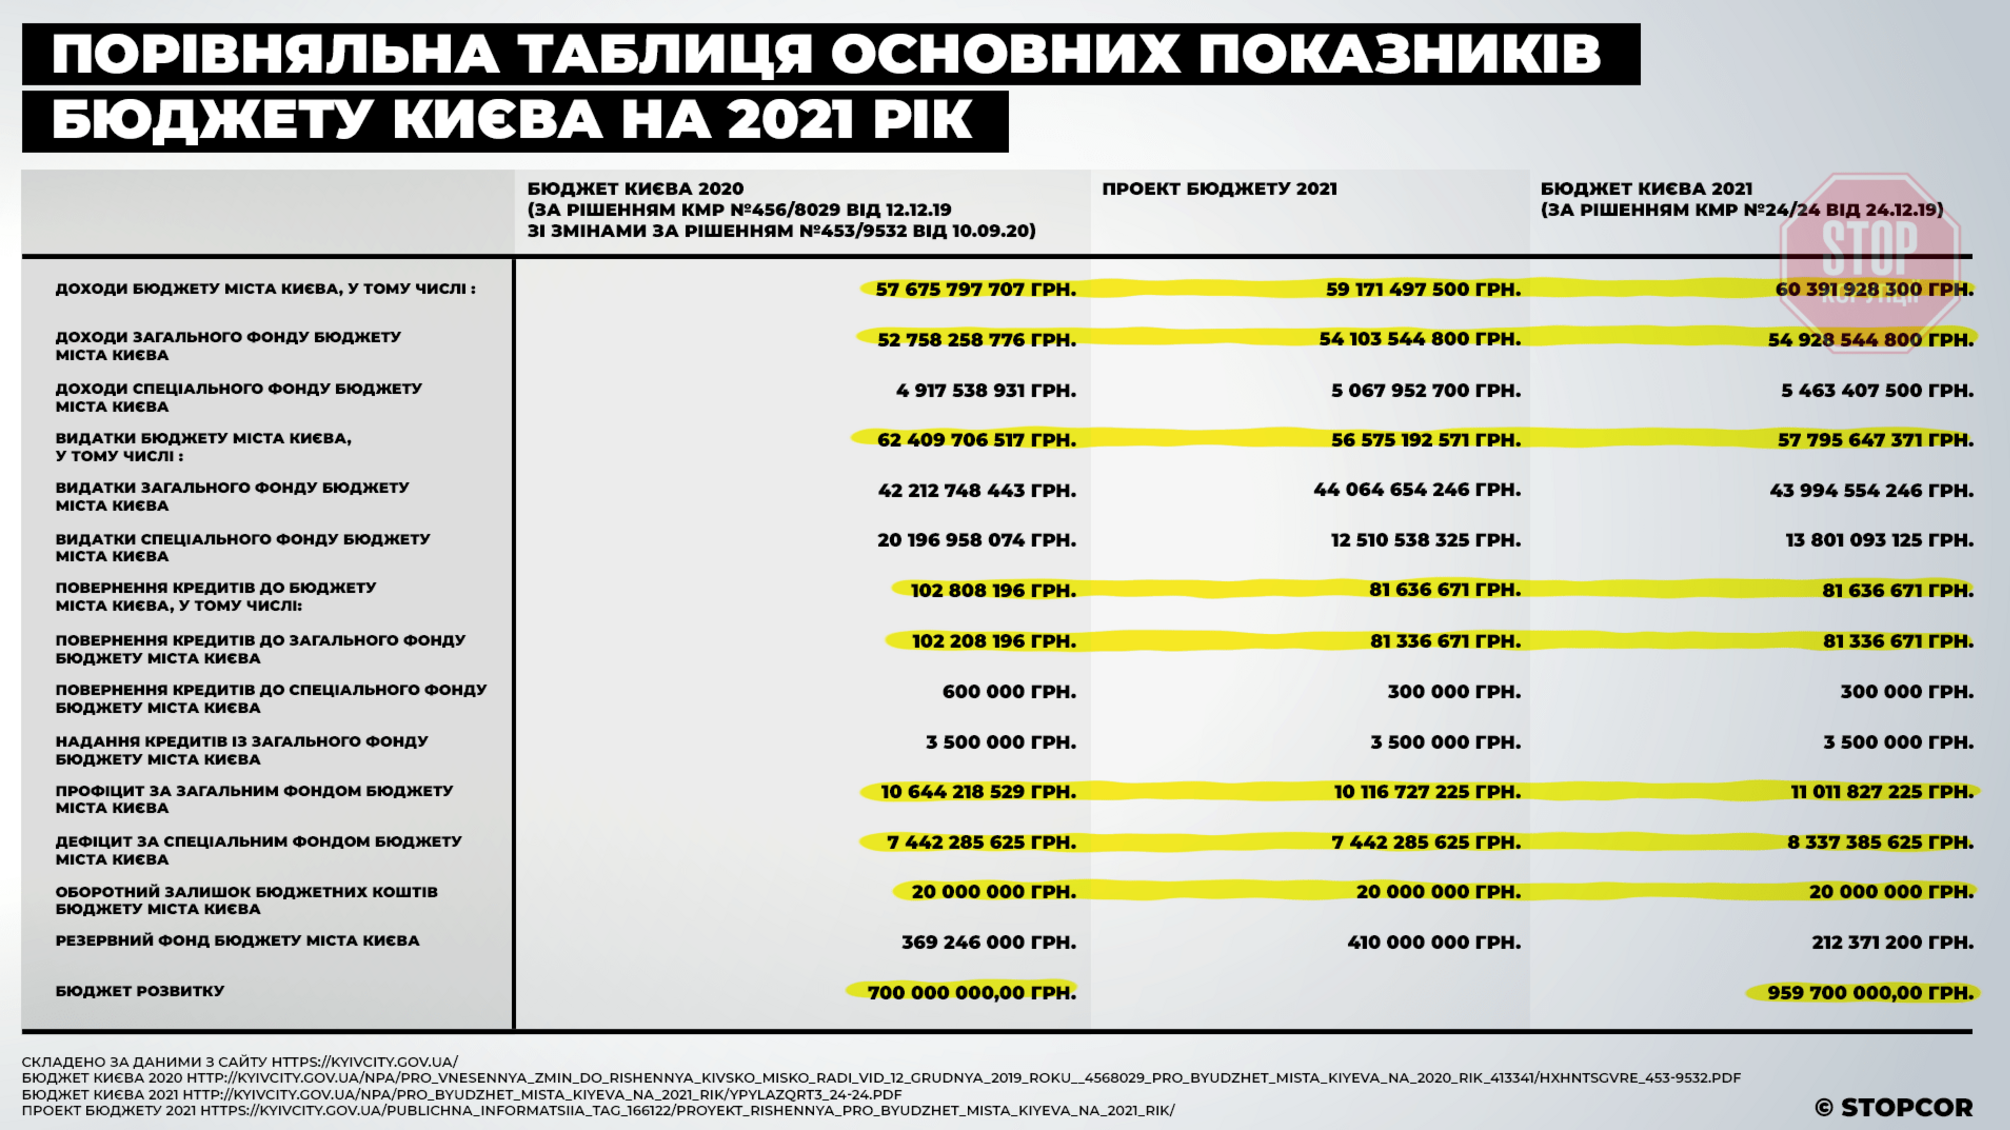 Сэкономят на инклюзии и 'Заботе': столичная стопкоровцы проанализировали бюджет Киева-2021